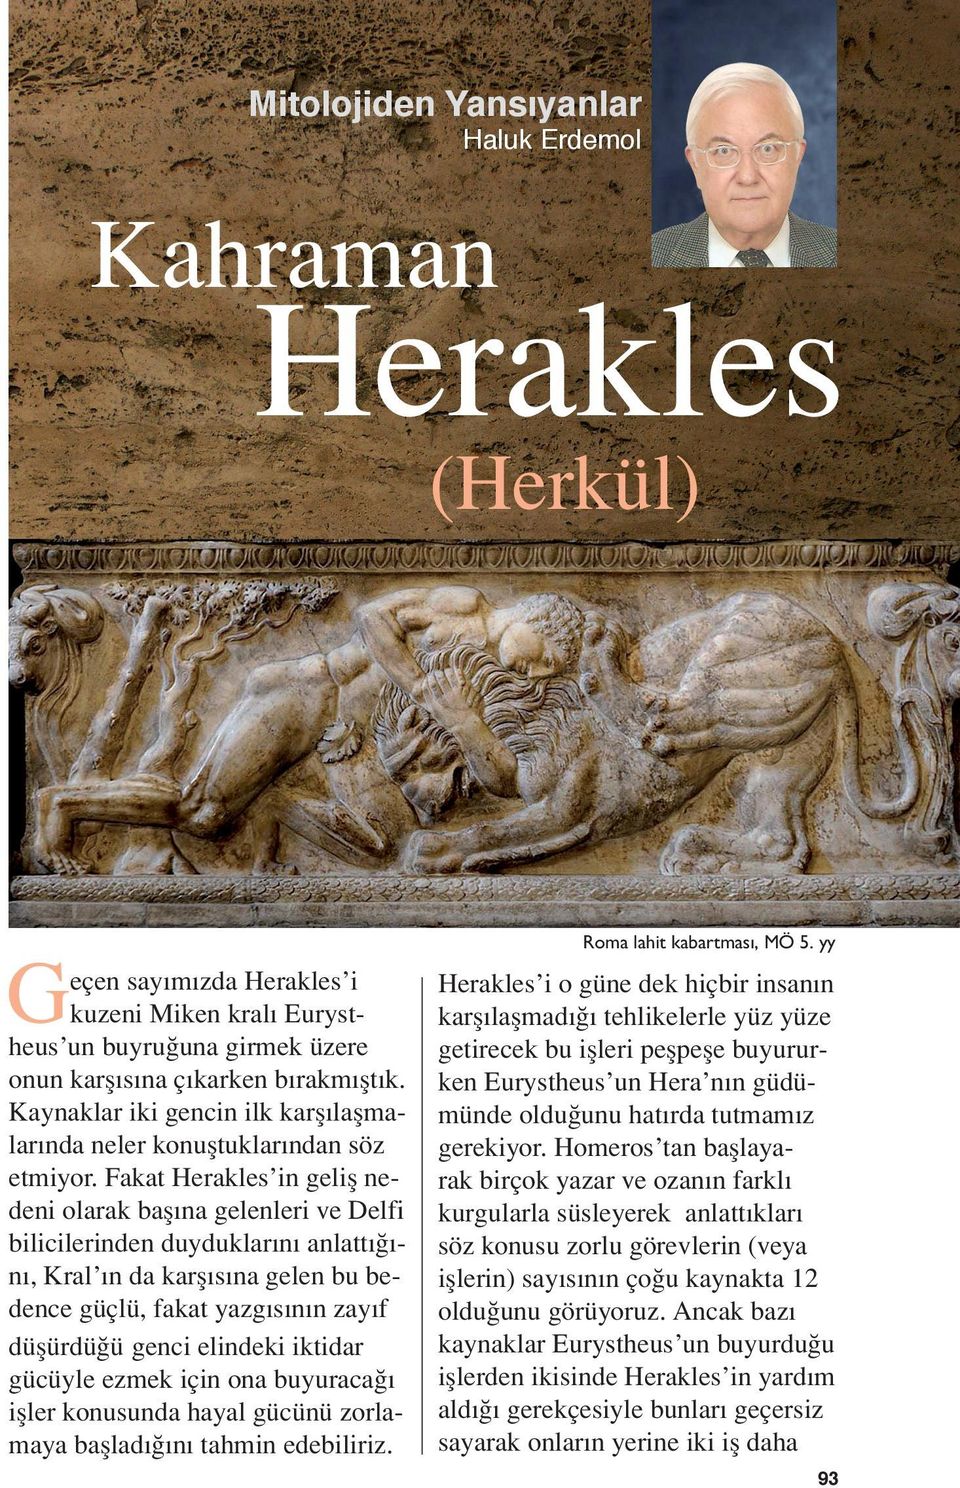 Fakat Herakles in geliş nedeni olarak başına gelenleri ve Delfi bilicilerinden duyduklarını anlattığını, Kral ın da karşısına gelen bu bedence güçlü, fakat yazgısının zayıf düşürdüğü genci elindeki